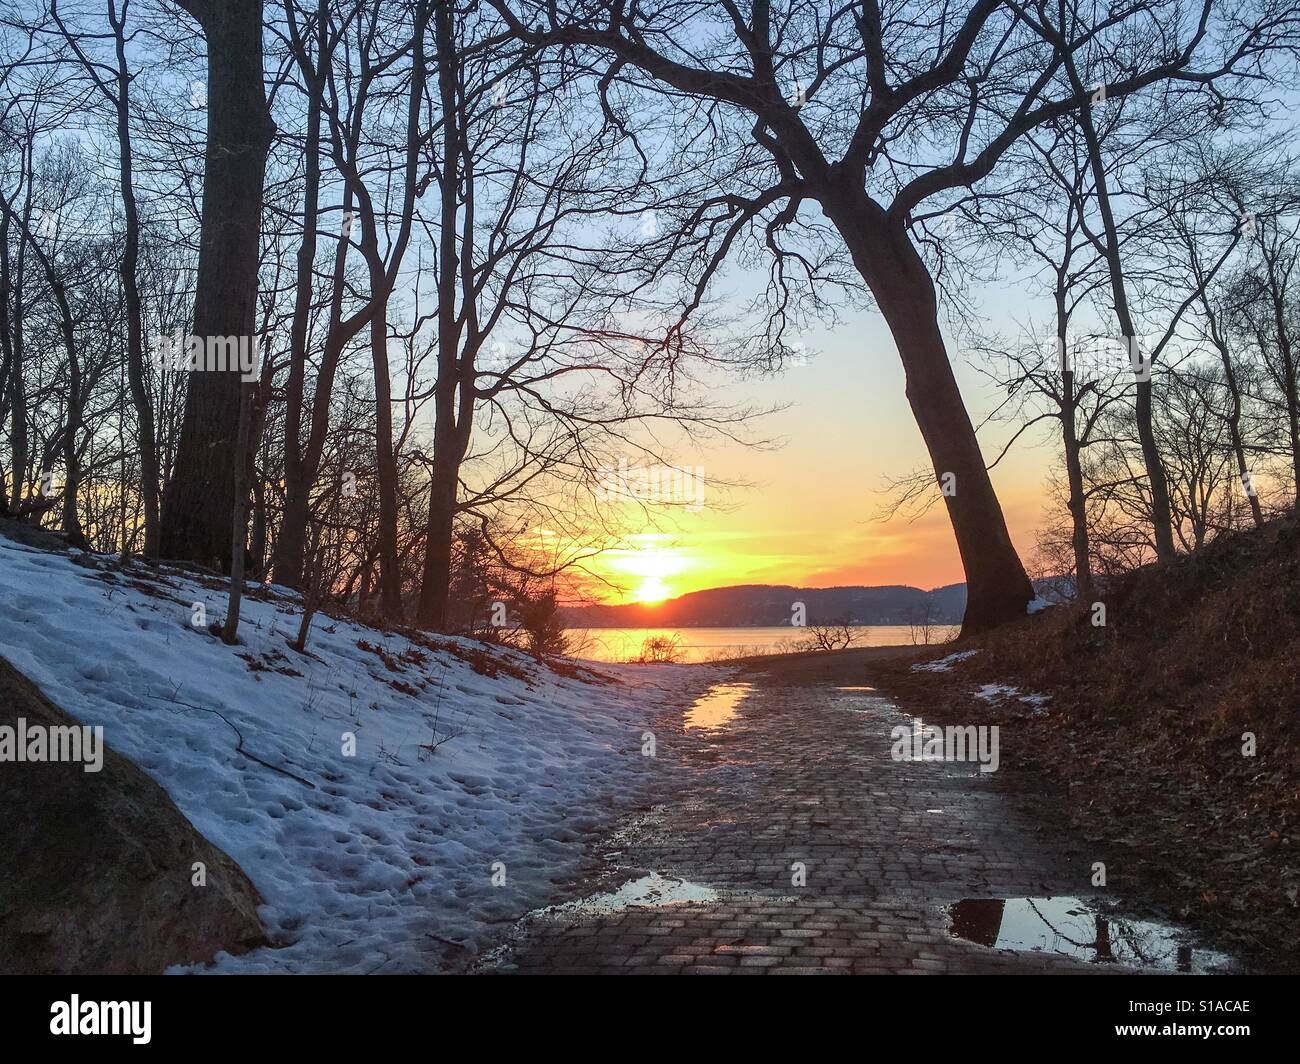 Di un bel colore rosa giallo viola arancione tramonto in inverno nella Valle del fiume Hudson si riflette nelle pozzanghere colorate di fusione della neve. Foto Stock